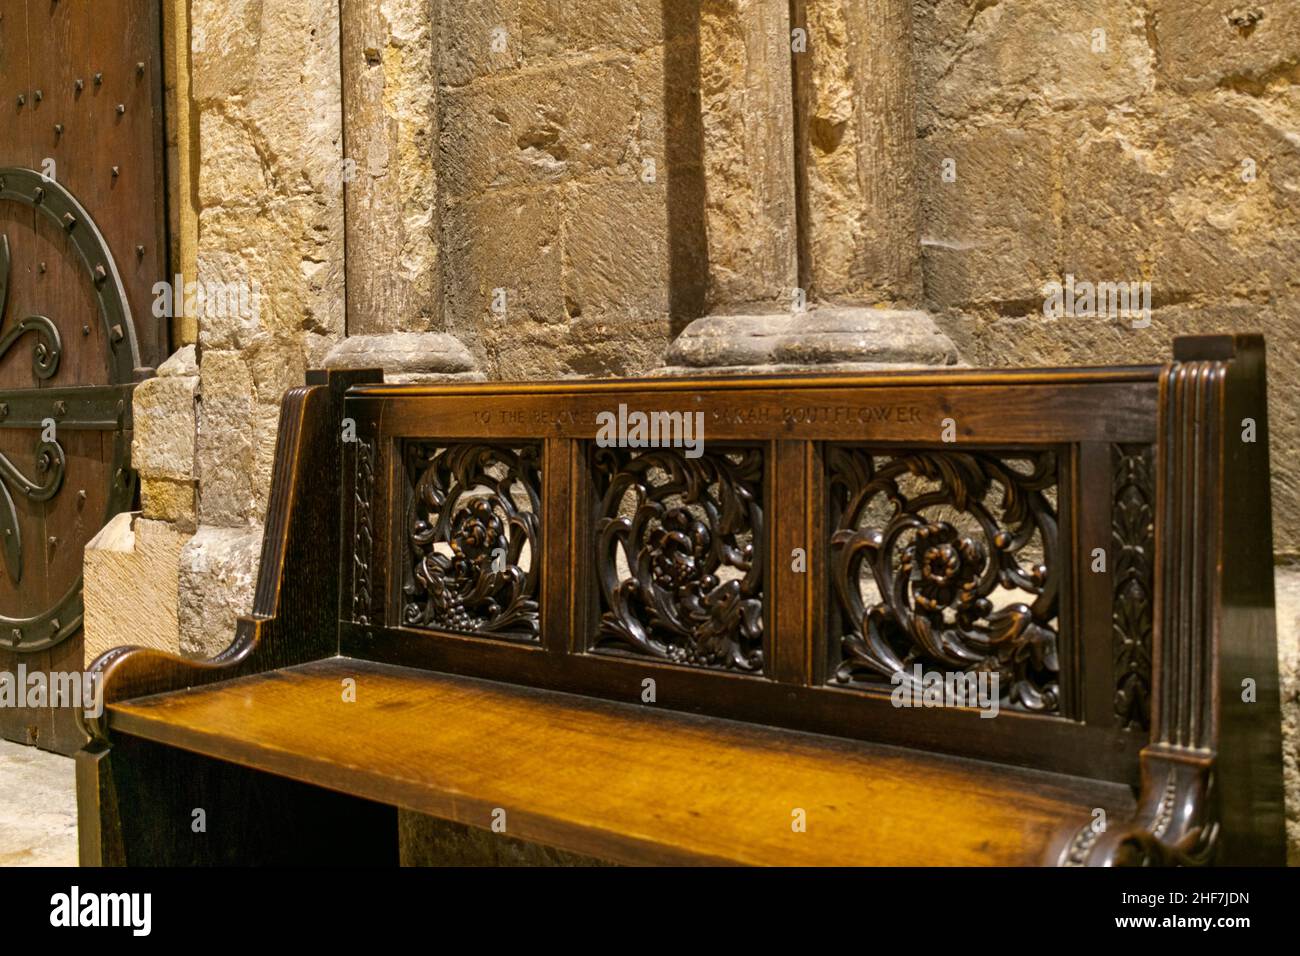 In der Kathedrale von Durham, England, Großbritannien. Innenraum der Kathedrale Kirche Christi, der seligen Jungfrau Maria und des heiligen Cuthbert von Durham. In Liebevoller Erinnerung Stockfoto